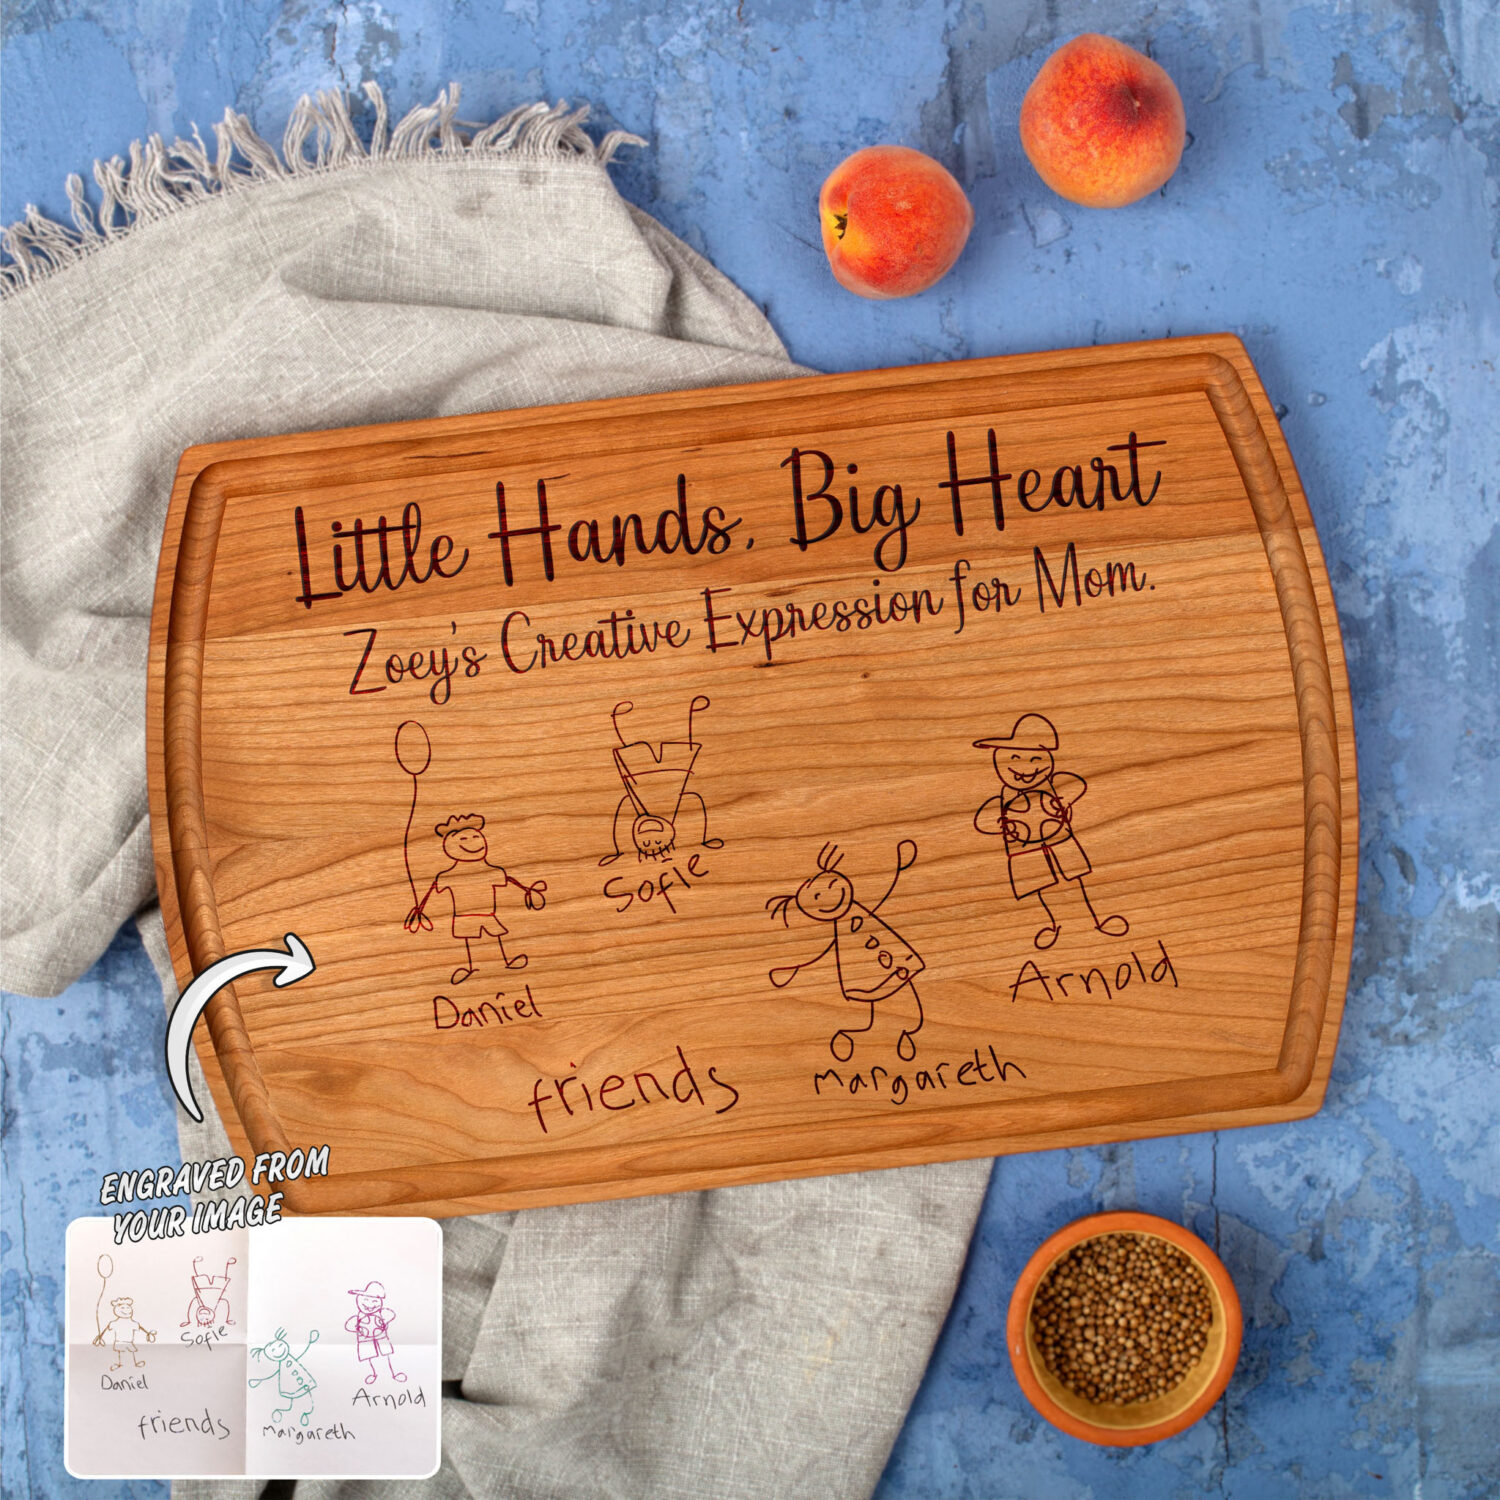 Little hands big heart cutting board.